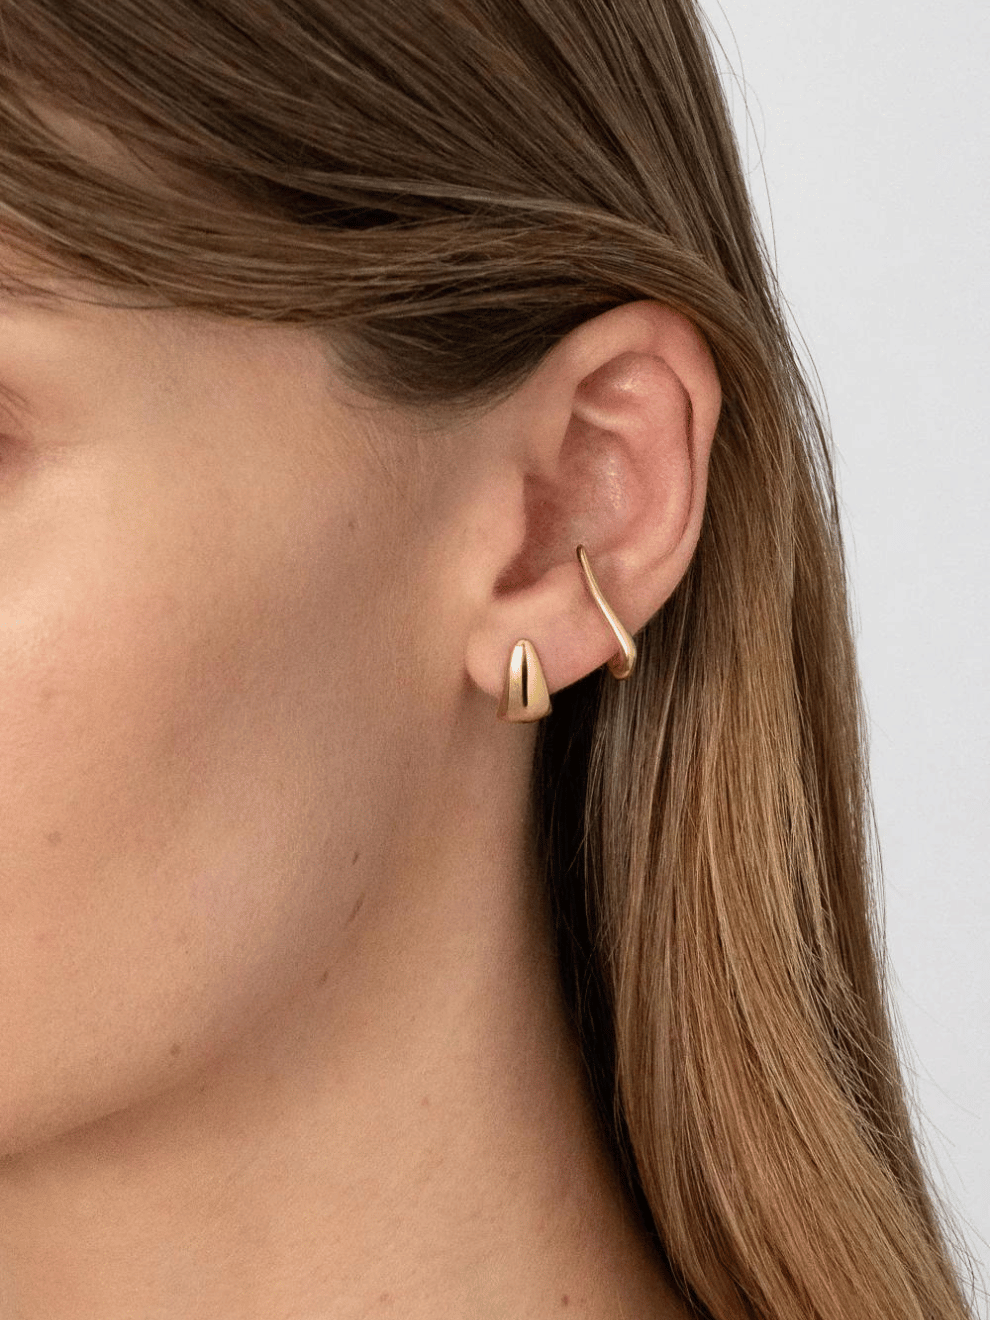 Rosco Earrings in Gold